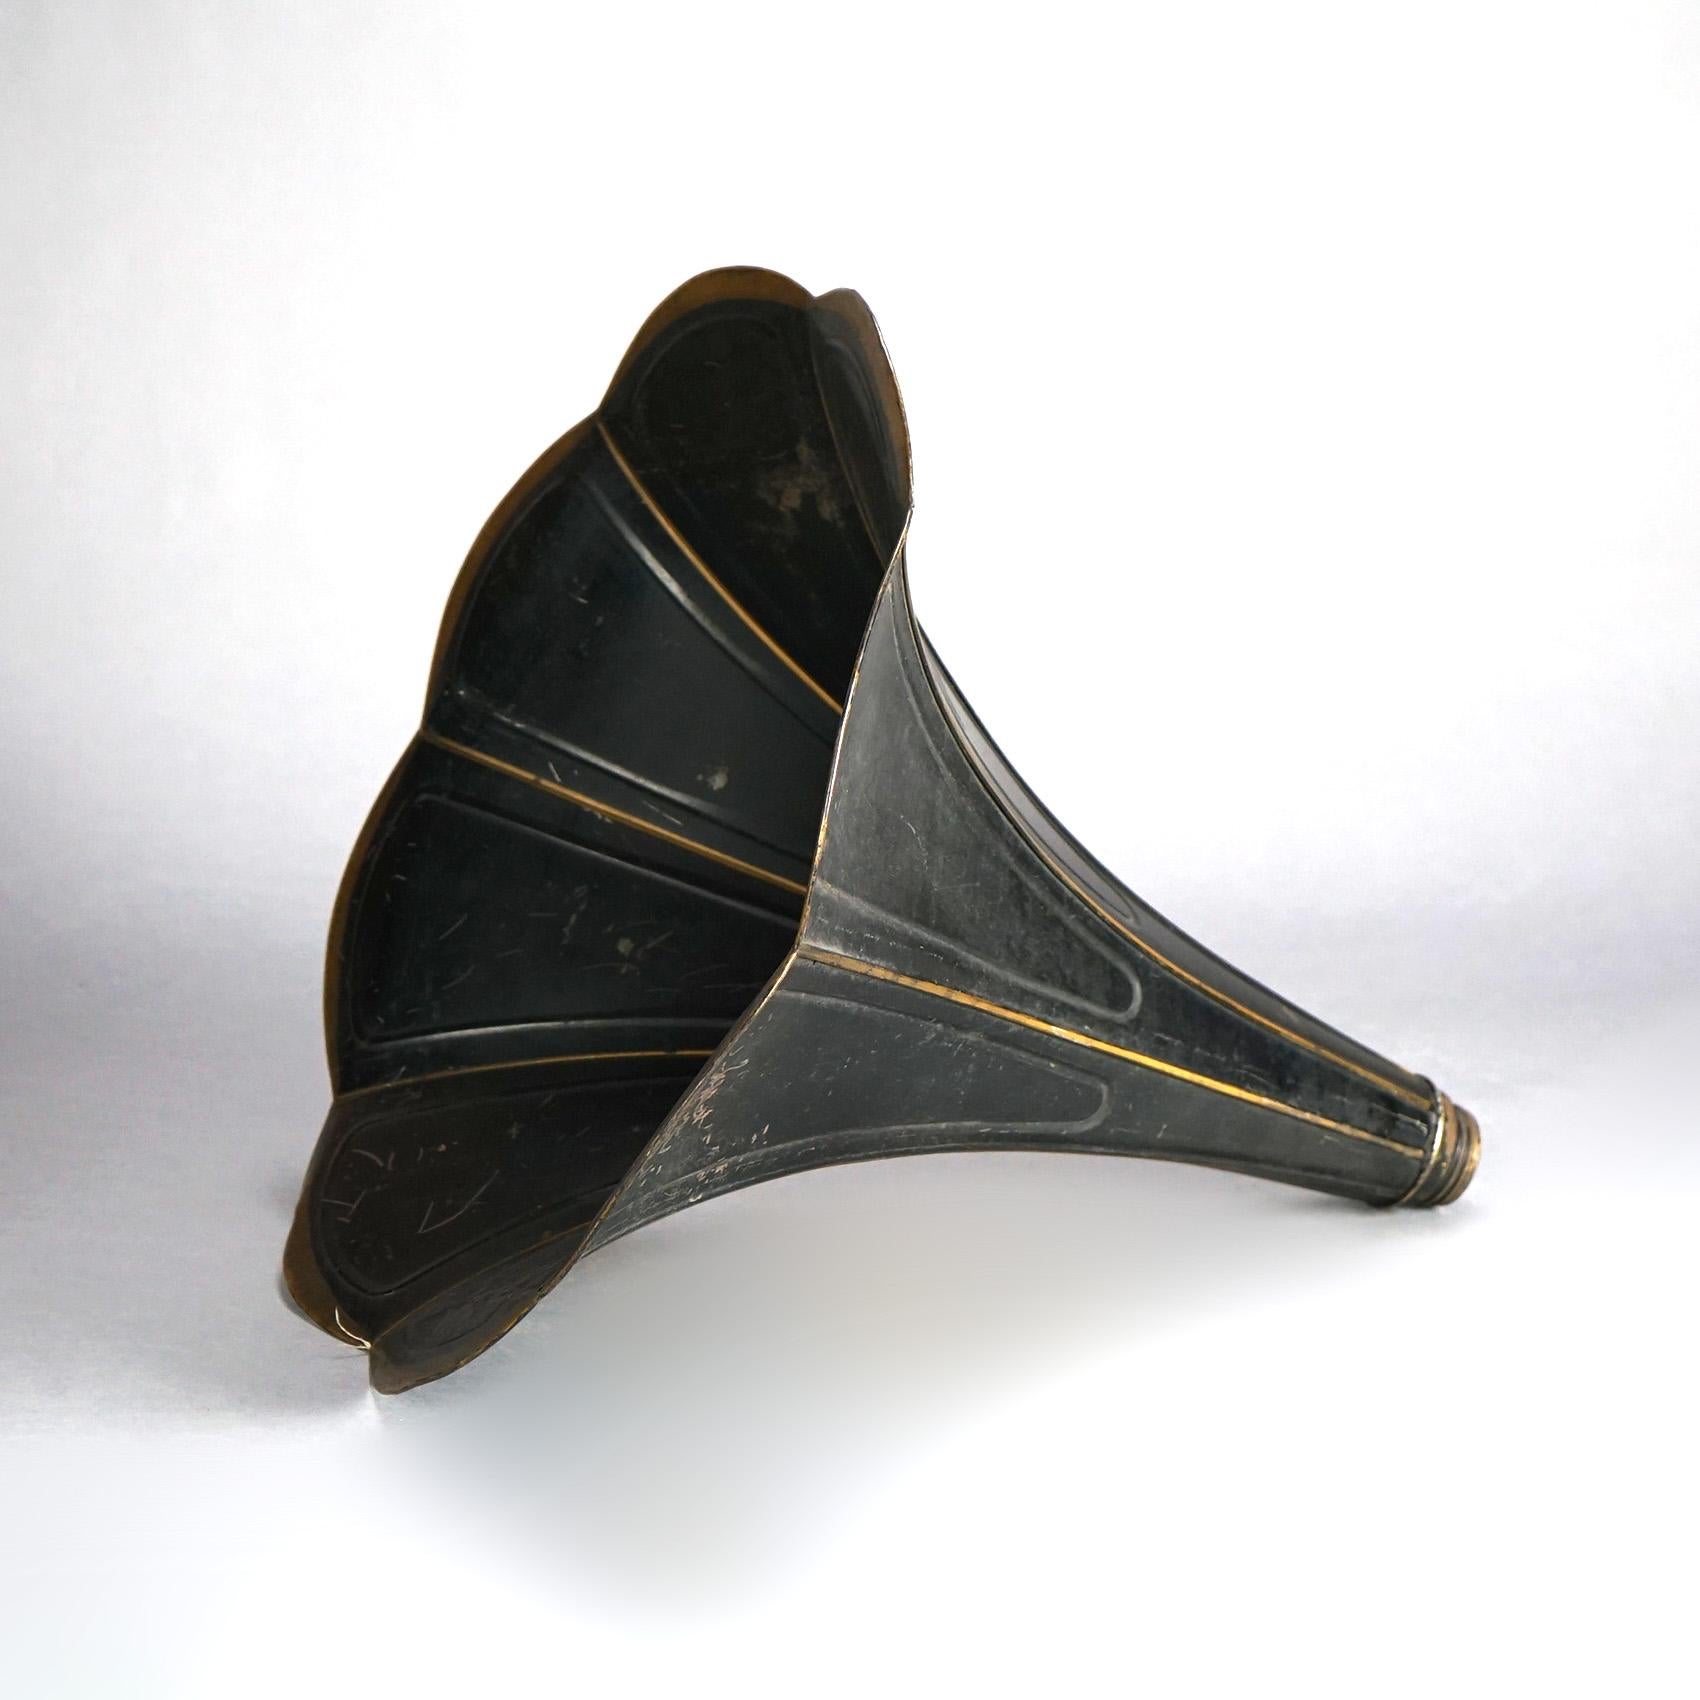 Ancienne corne de phonographe Victrola en métal ébonisé et doré Circa 1910

Dimensions : 18,5''H x 18,5''L x 18,5''P